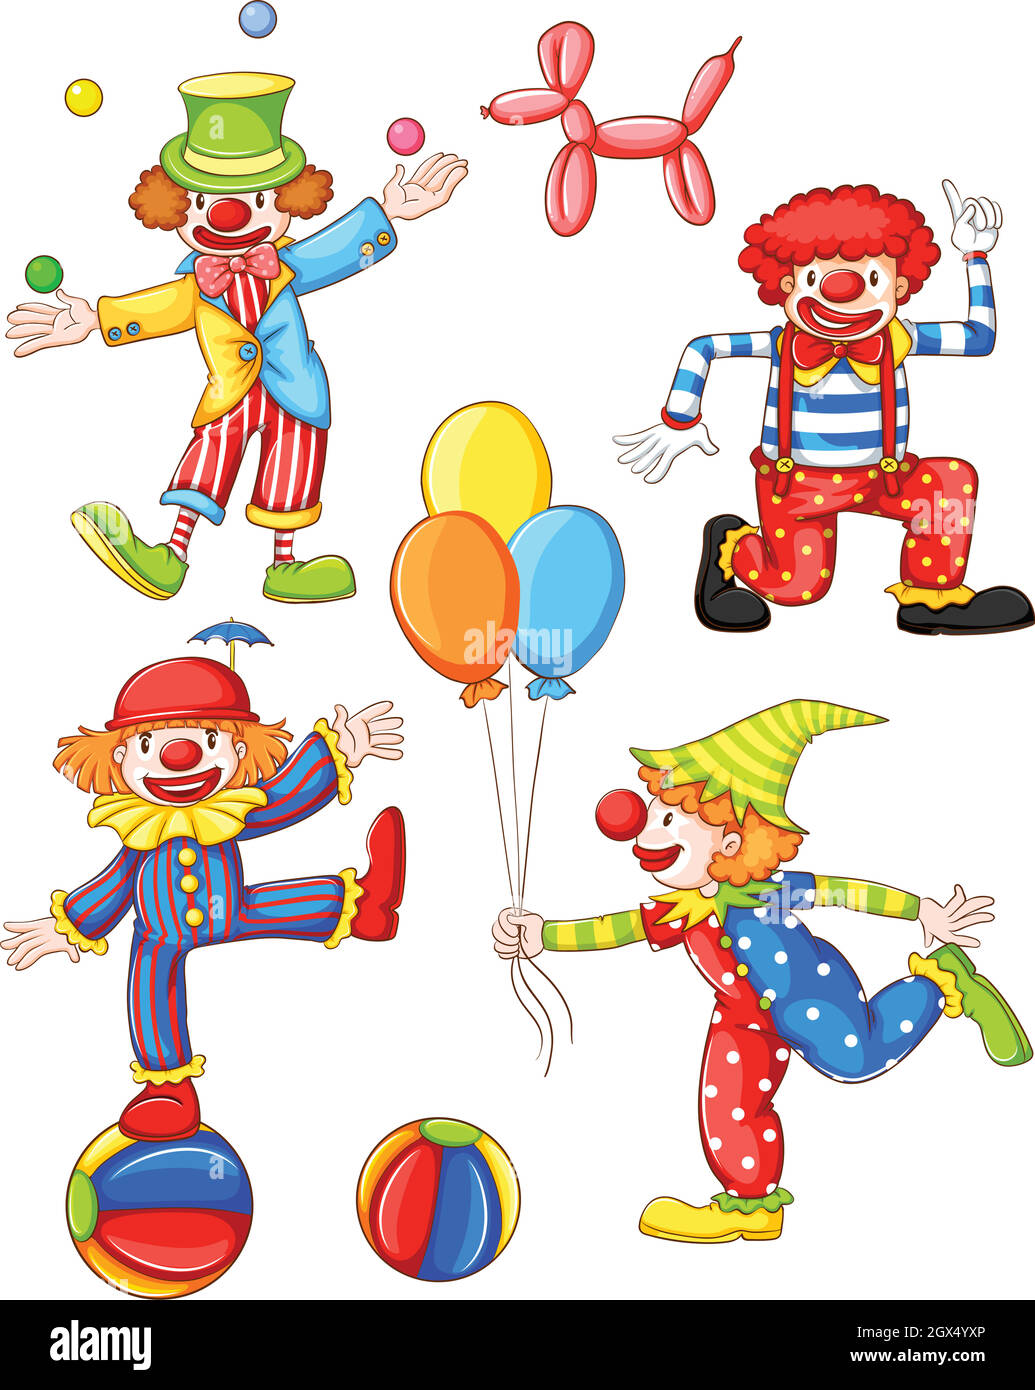 Eine einfache farbige Zeichnung der vier Clowns Stock Vektor